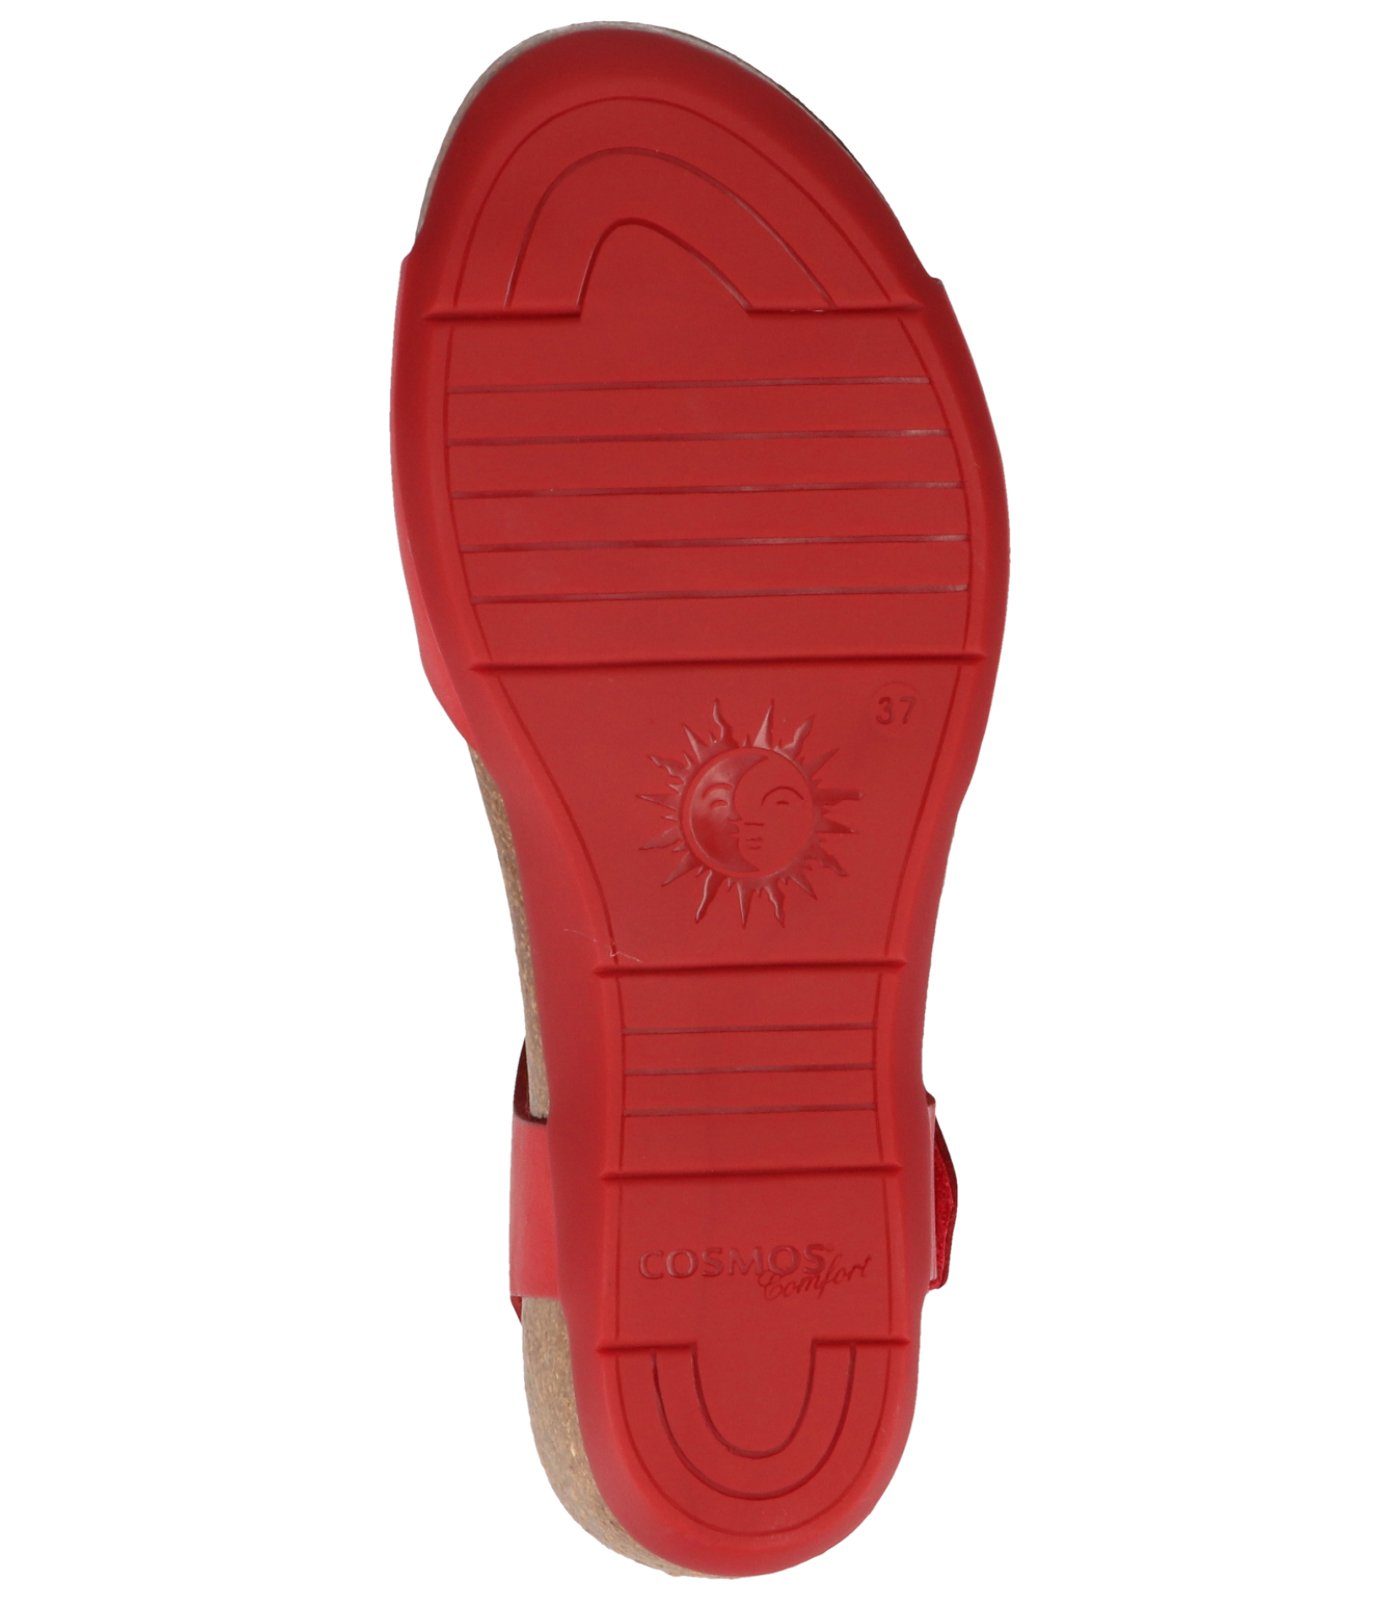 Keilsandalette Comfort Rot Sandalen COSMOS Leder